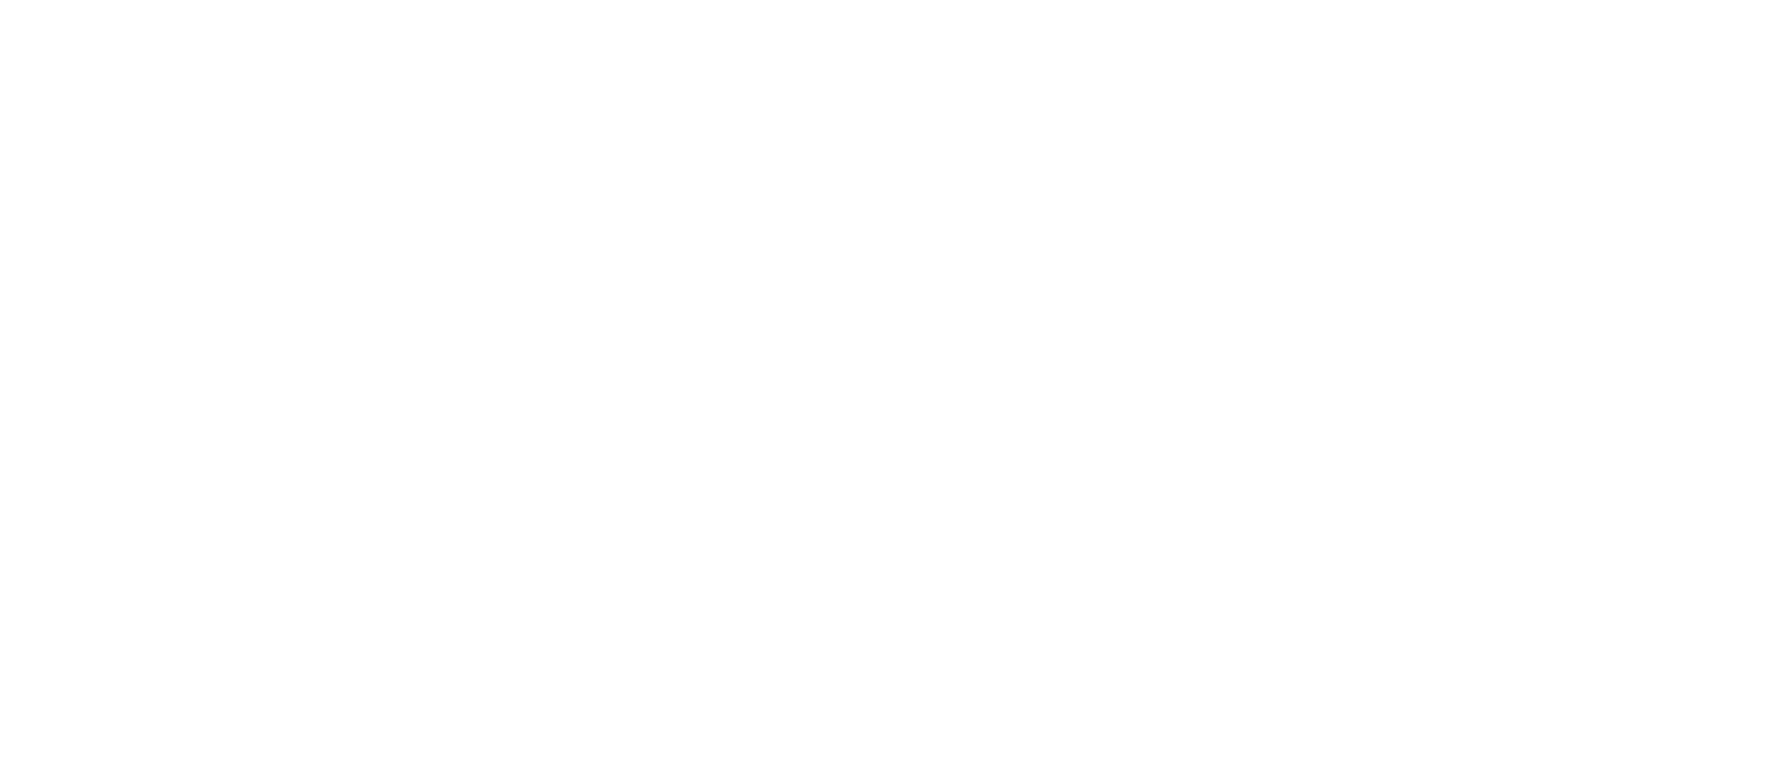 Spring Breakthrough logo